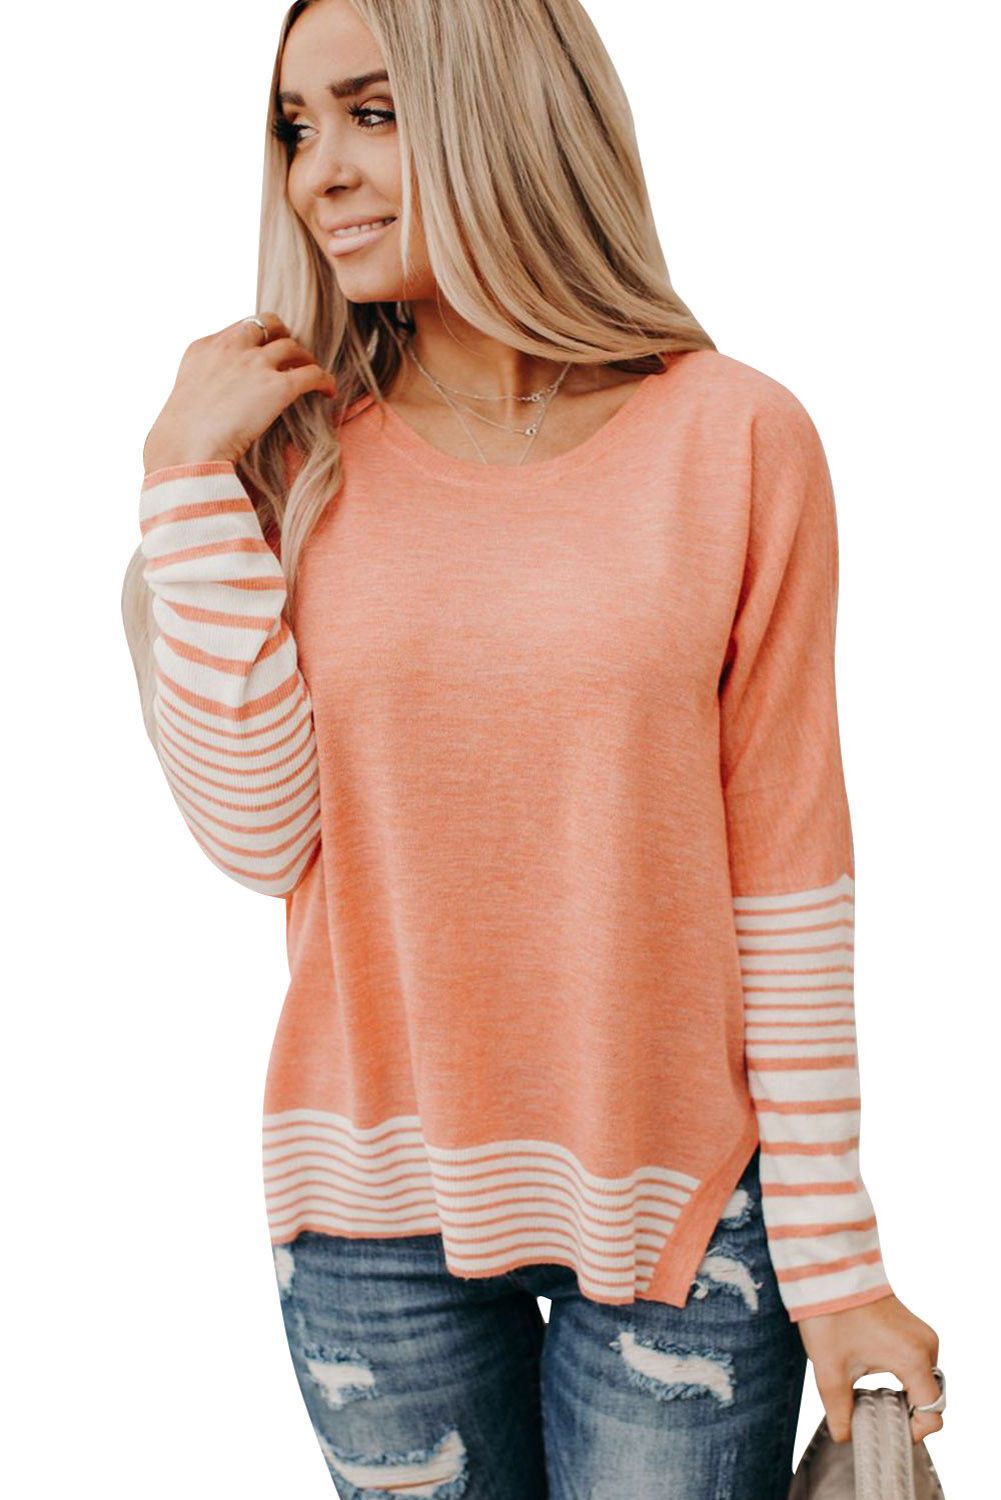 US$8.98 Orange Striped Accent Knit Top Wholesale Online